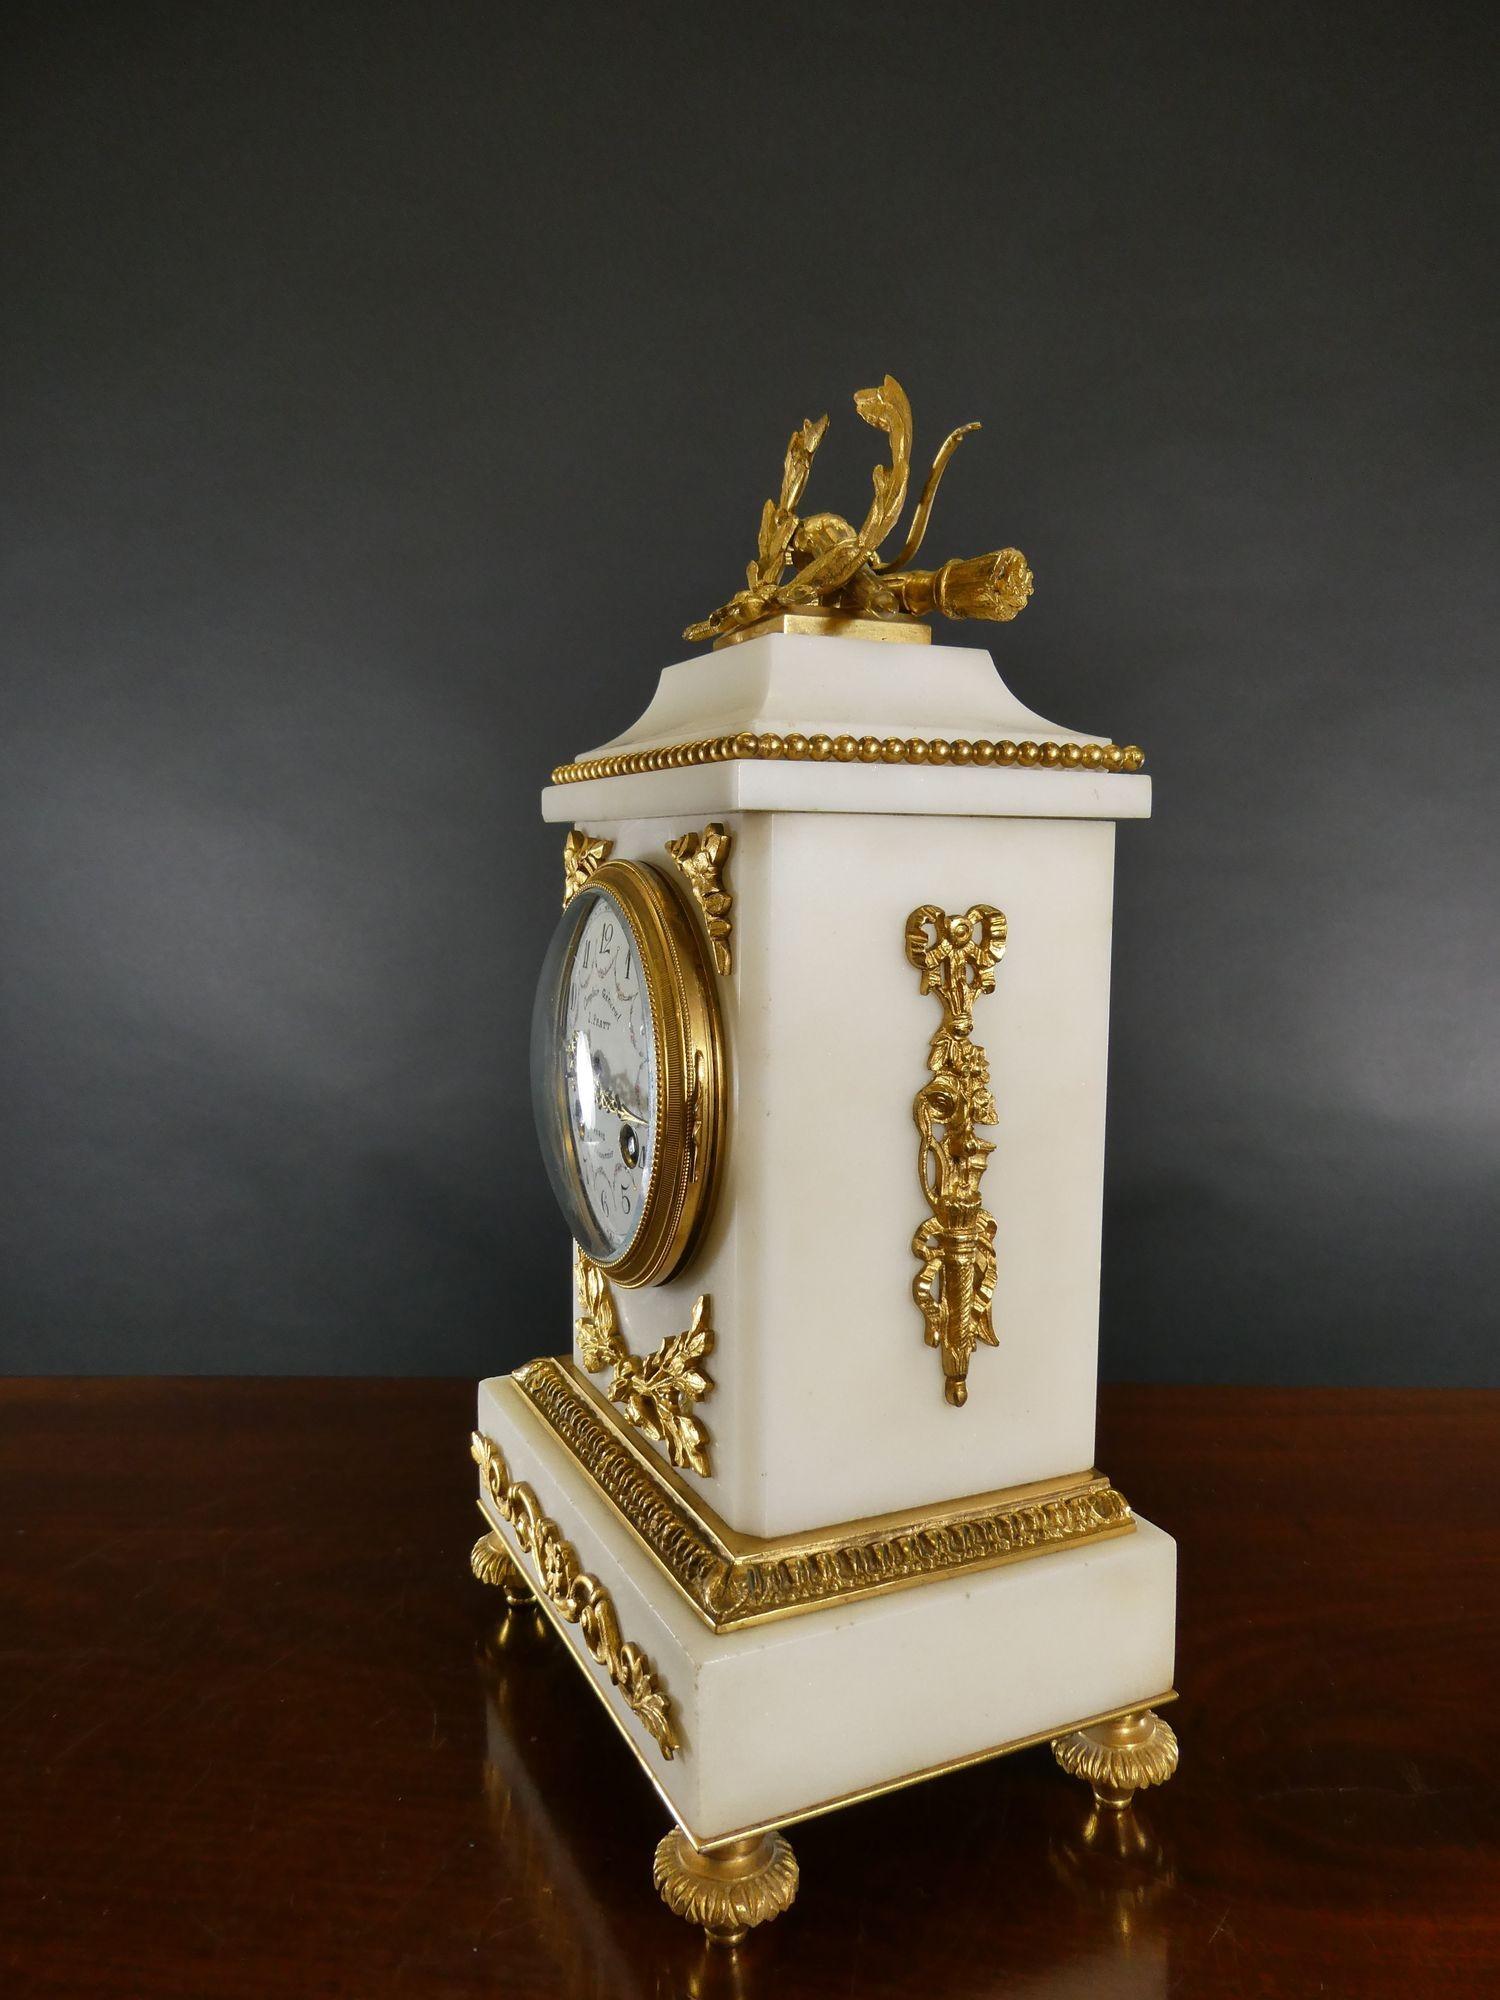 Pendule de cheminée en marbre blanc et bronze doré de Samuel Marti.
 
Boîtier en marbre blanc à socle surélevé avec des montures en bronze doré et un décor de perles surmonté d'une couronne en bronze doré, reposant sur des pieds décoratifs en